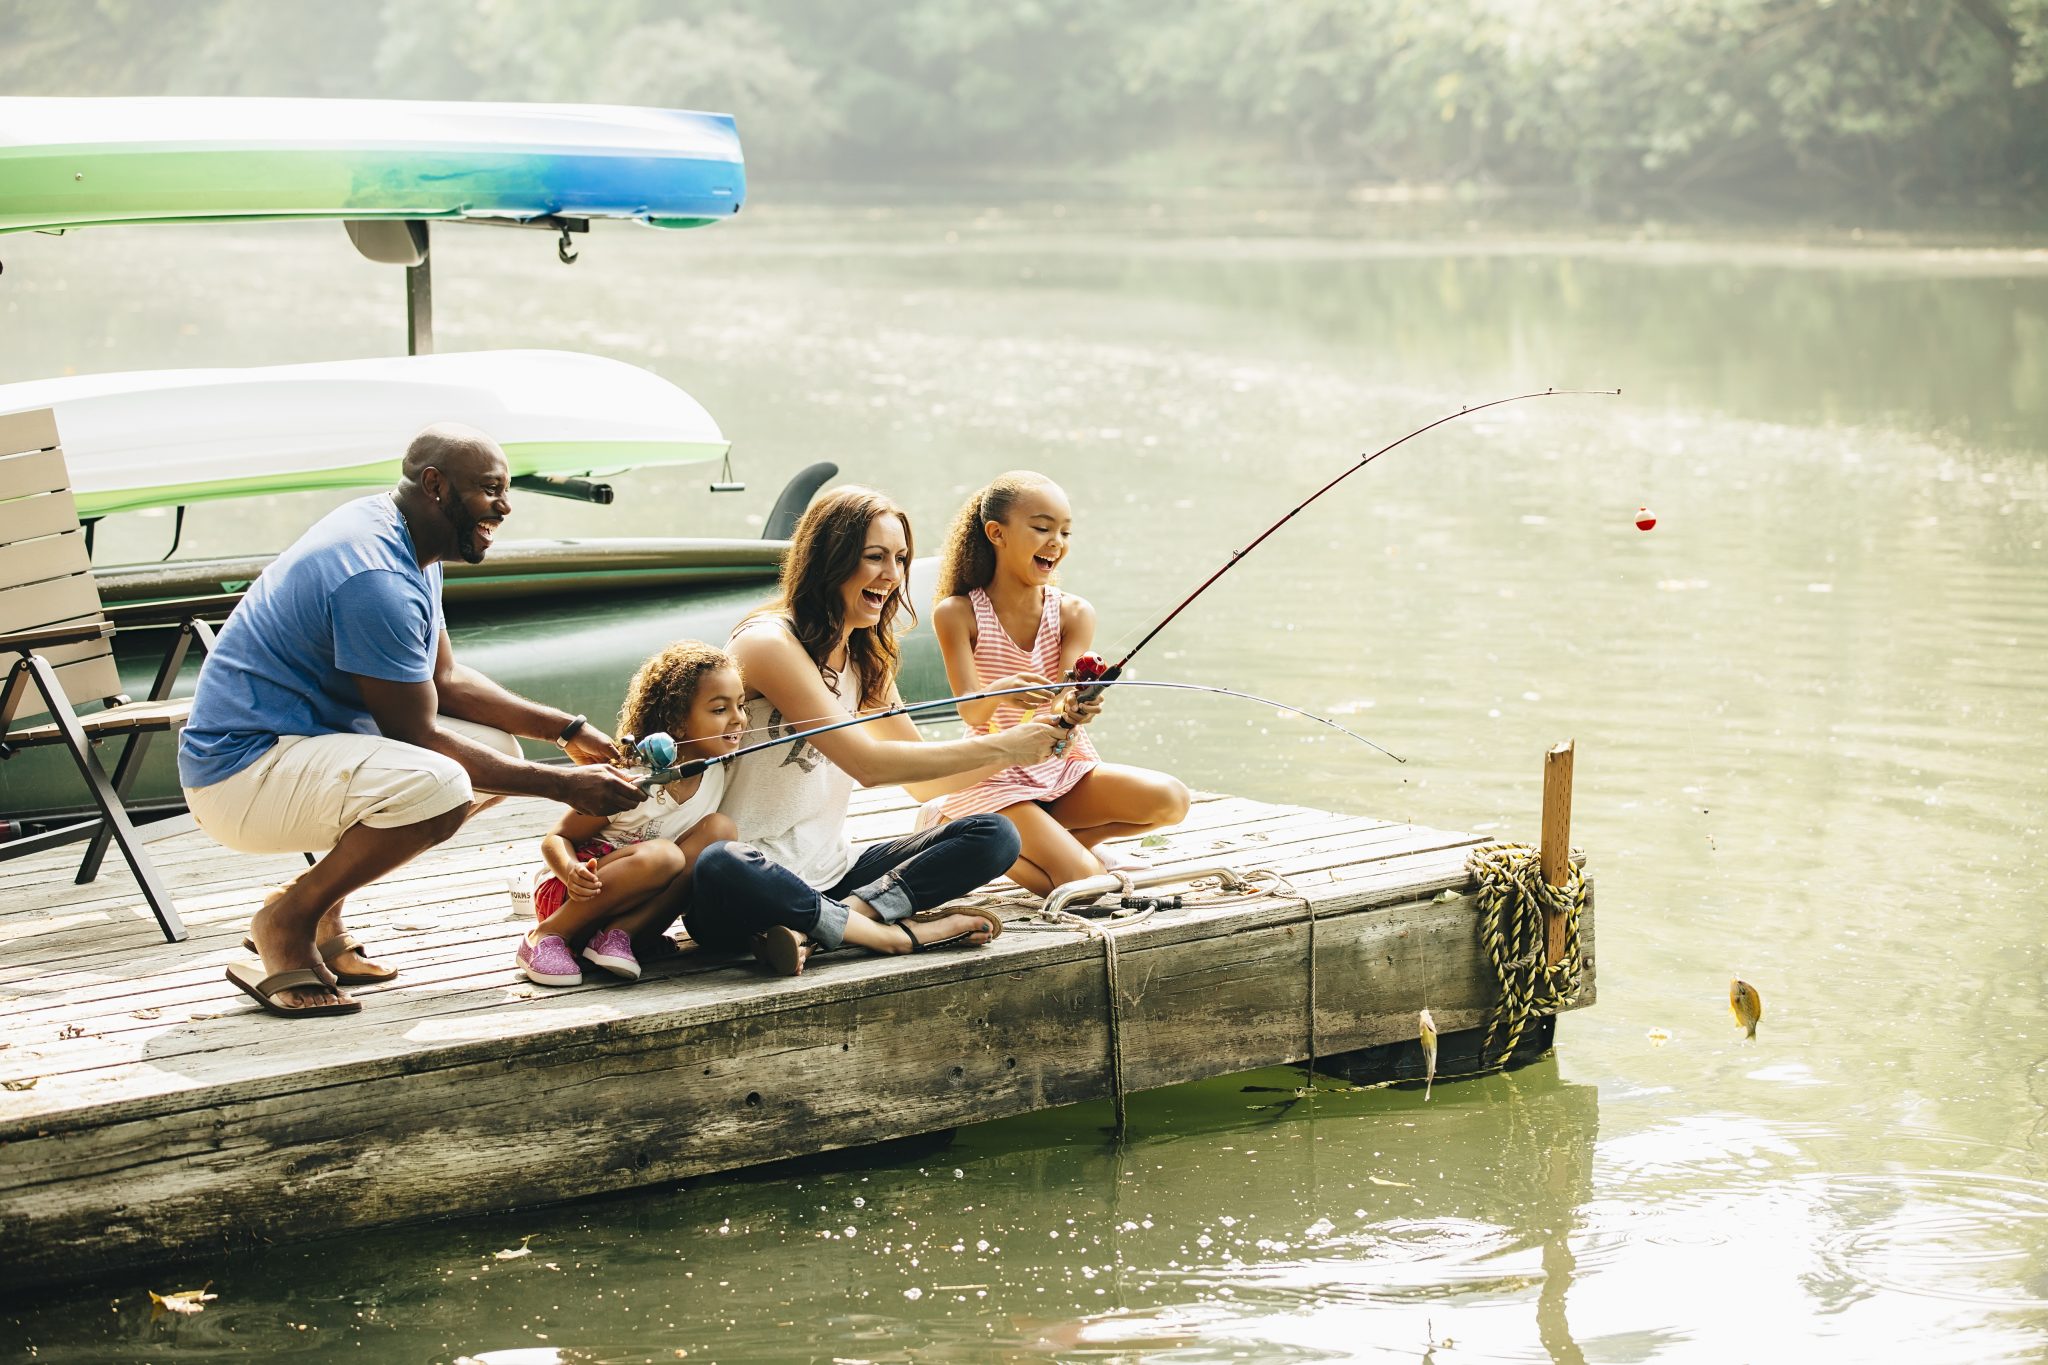 Family fishing in lake